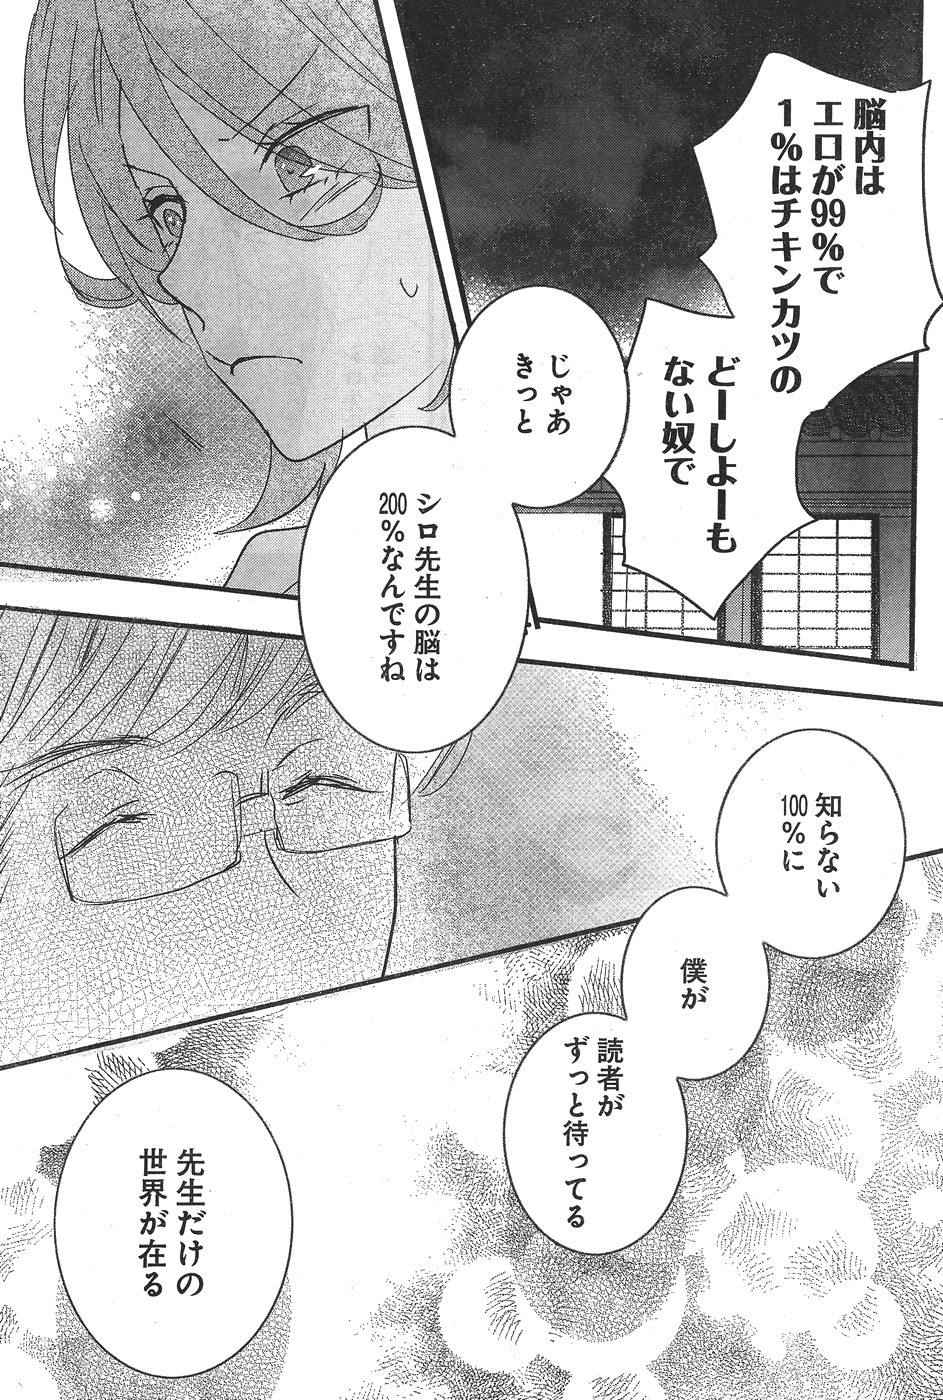 Bokura wa Minna Kawaisou - Chapter 83 - Page 20